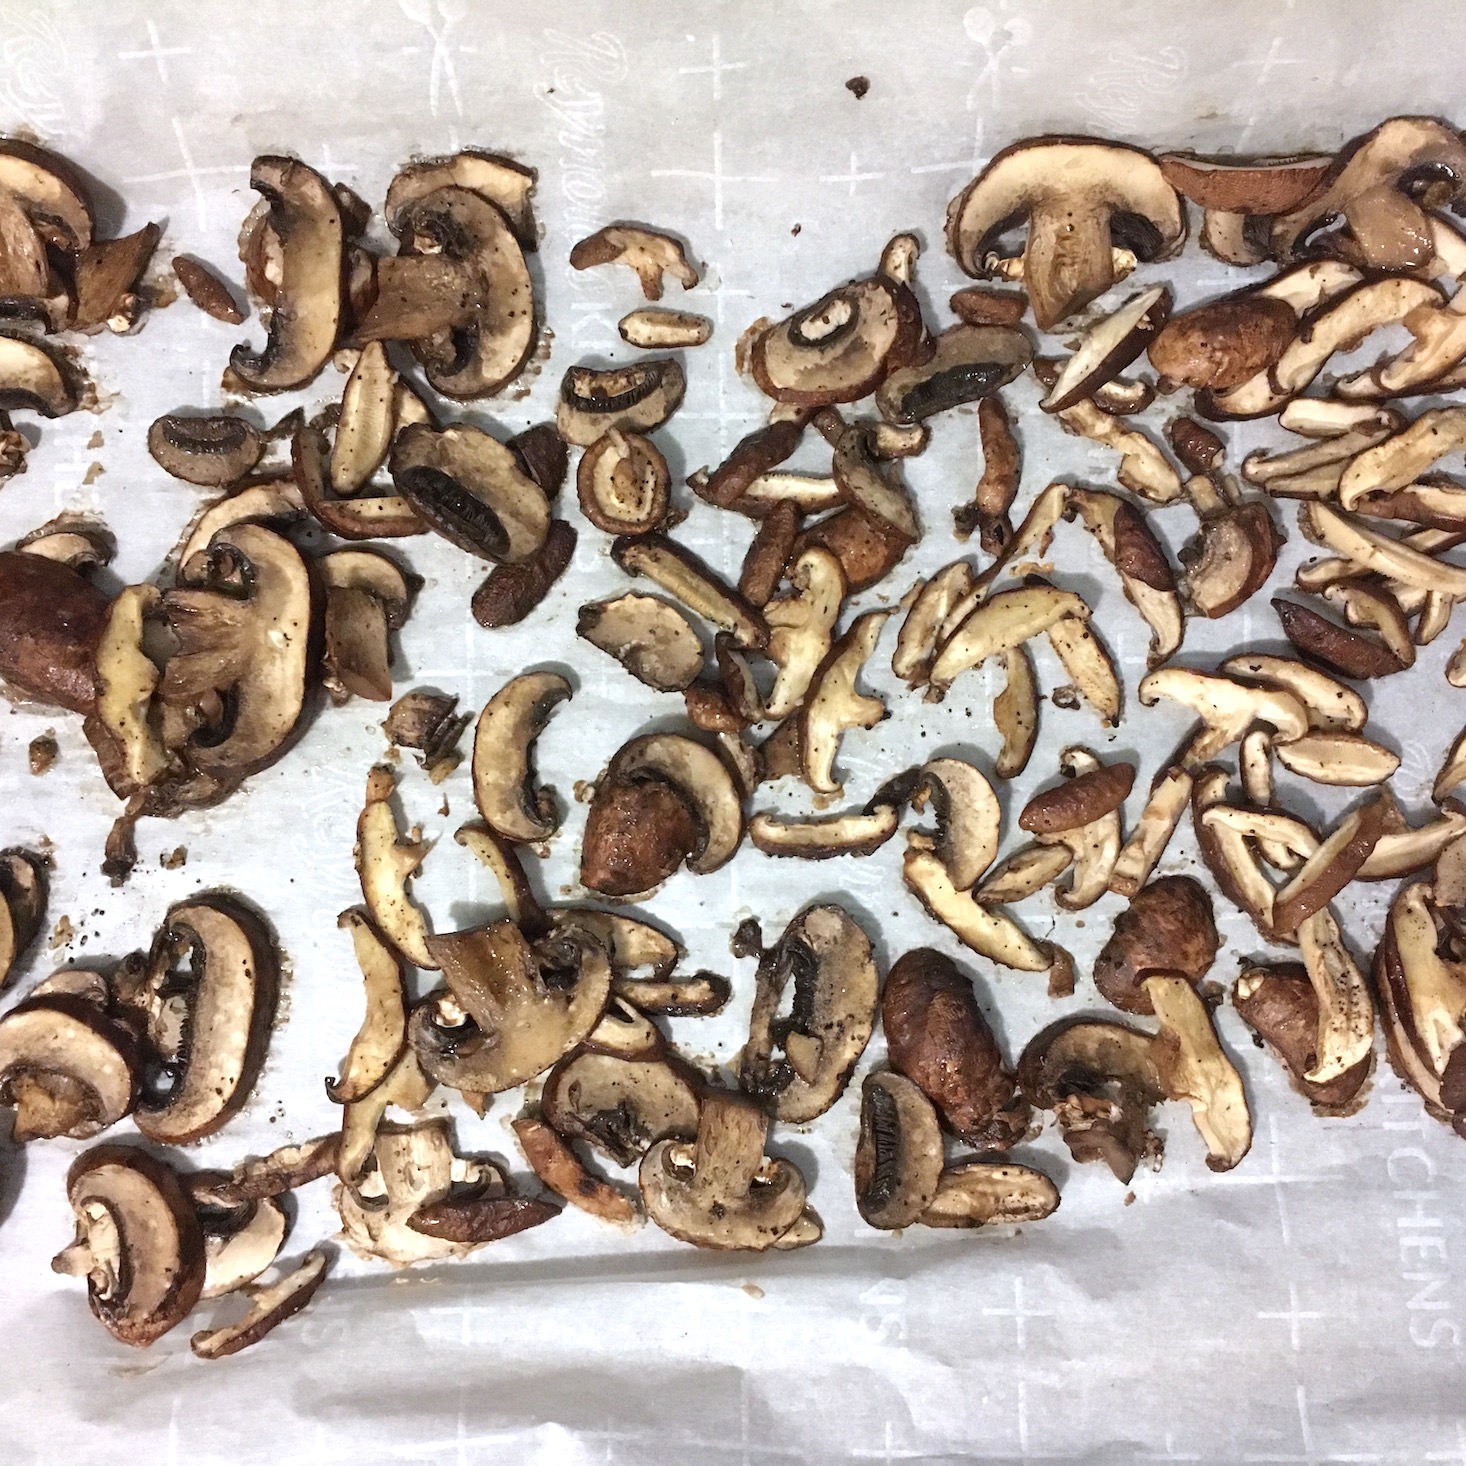 mushroom risotto finished roasted mushrooms on baking sheet